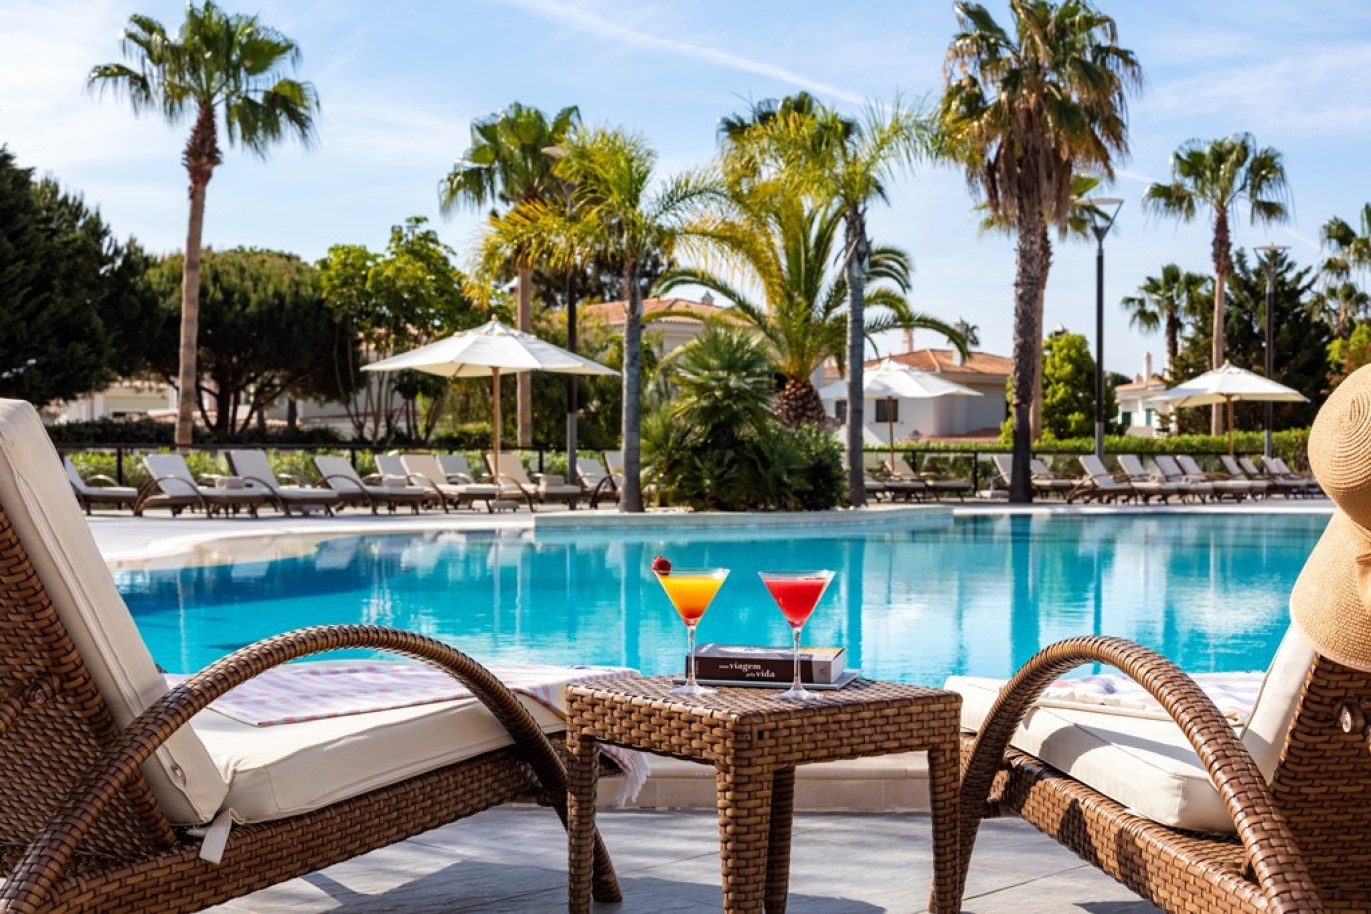 Apartamento, 2 quartos, piscina, para venda na Quinta do Lago, Algarve_263409